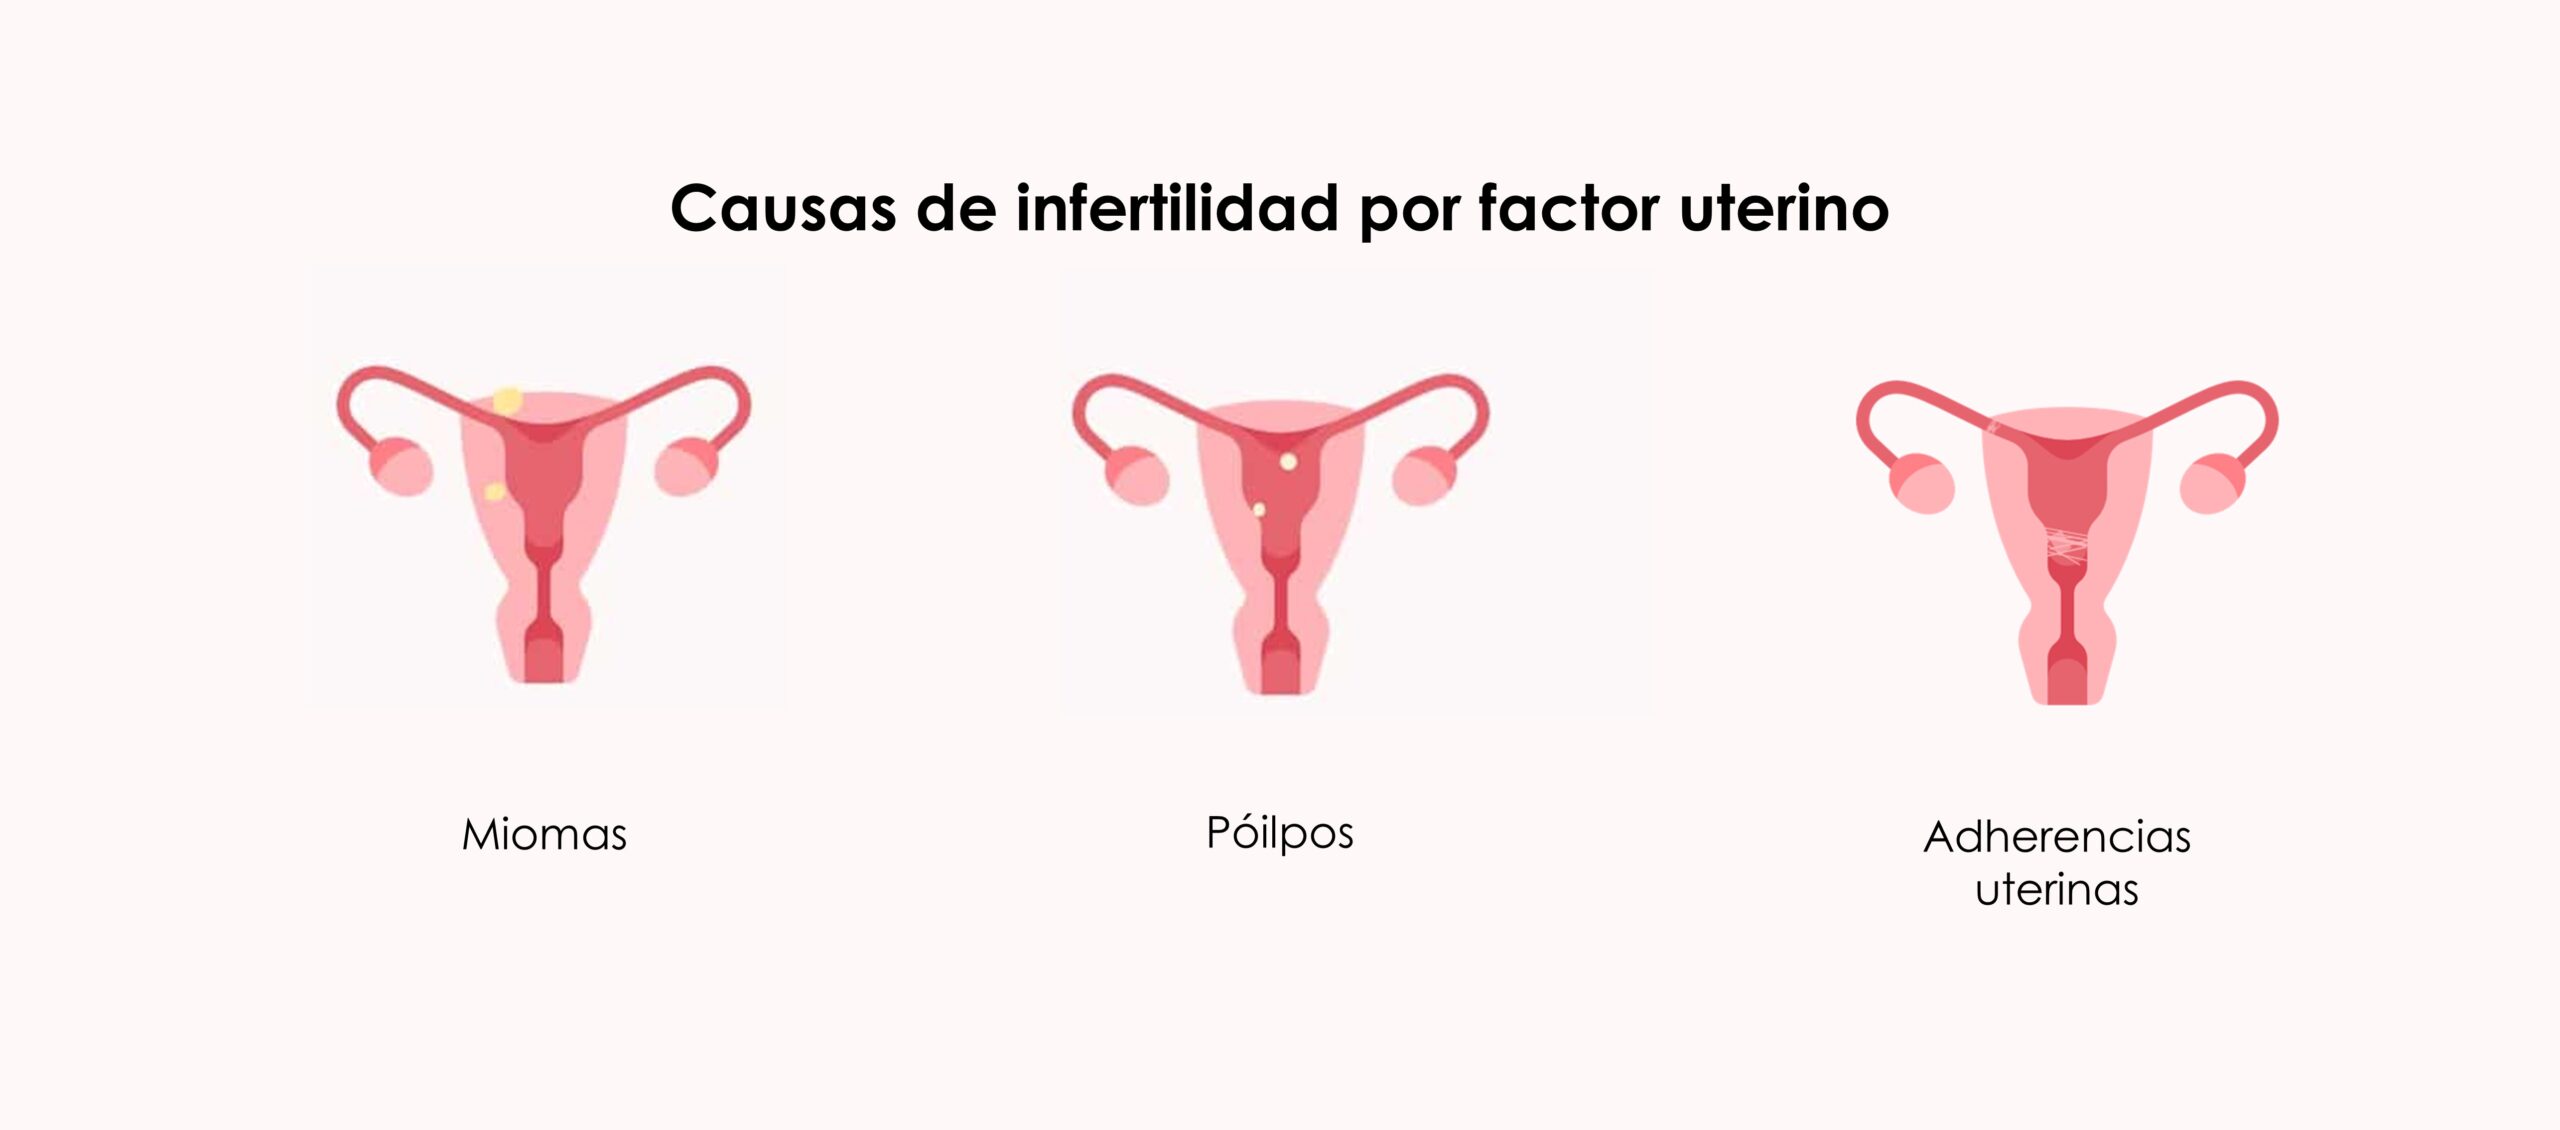 Causas de la infertilidad por factor uterino